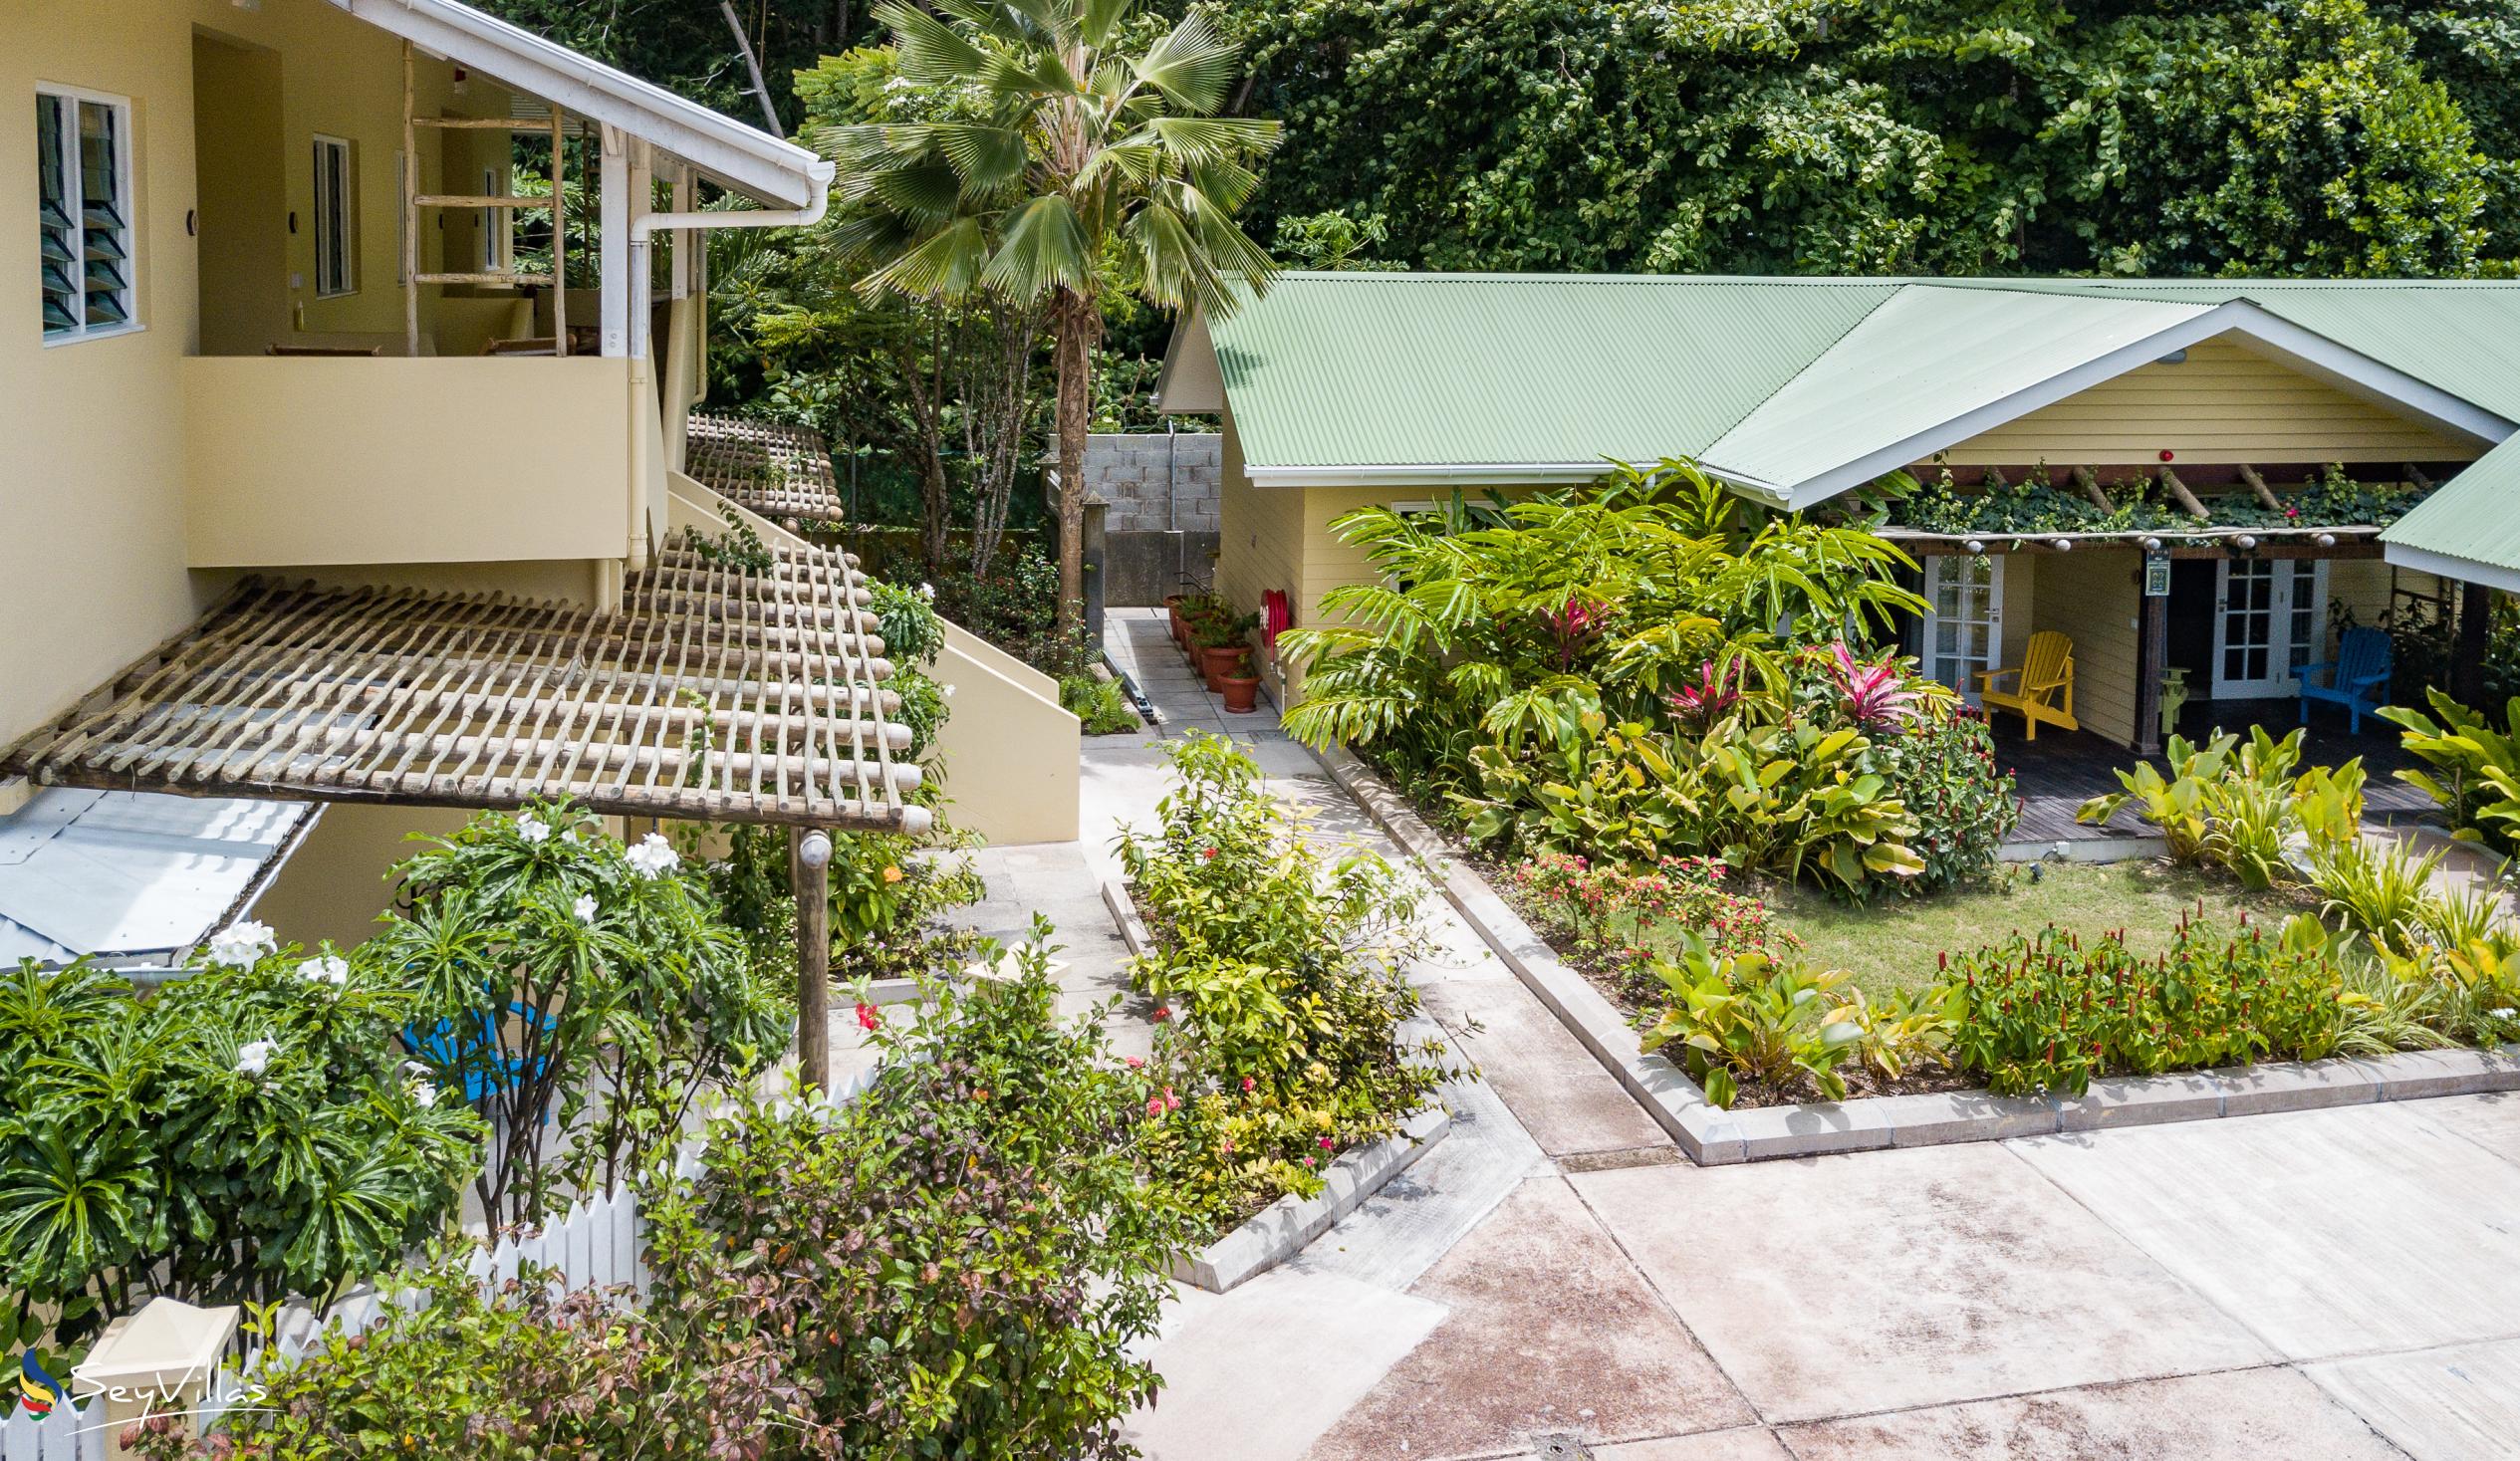 Foto 22: Residence Praslinoise - Aussenbereich - Praslin (Seychellen)